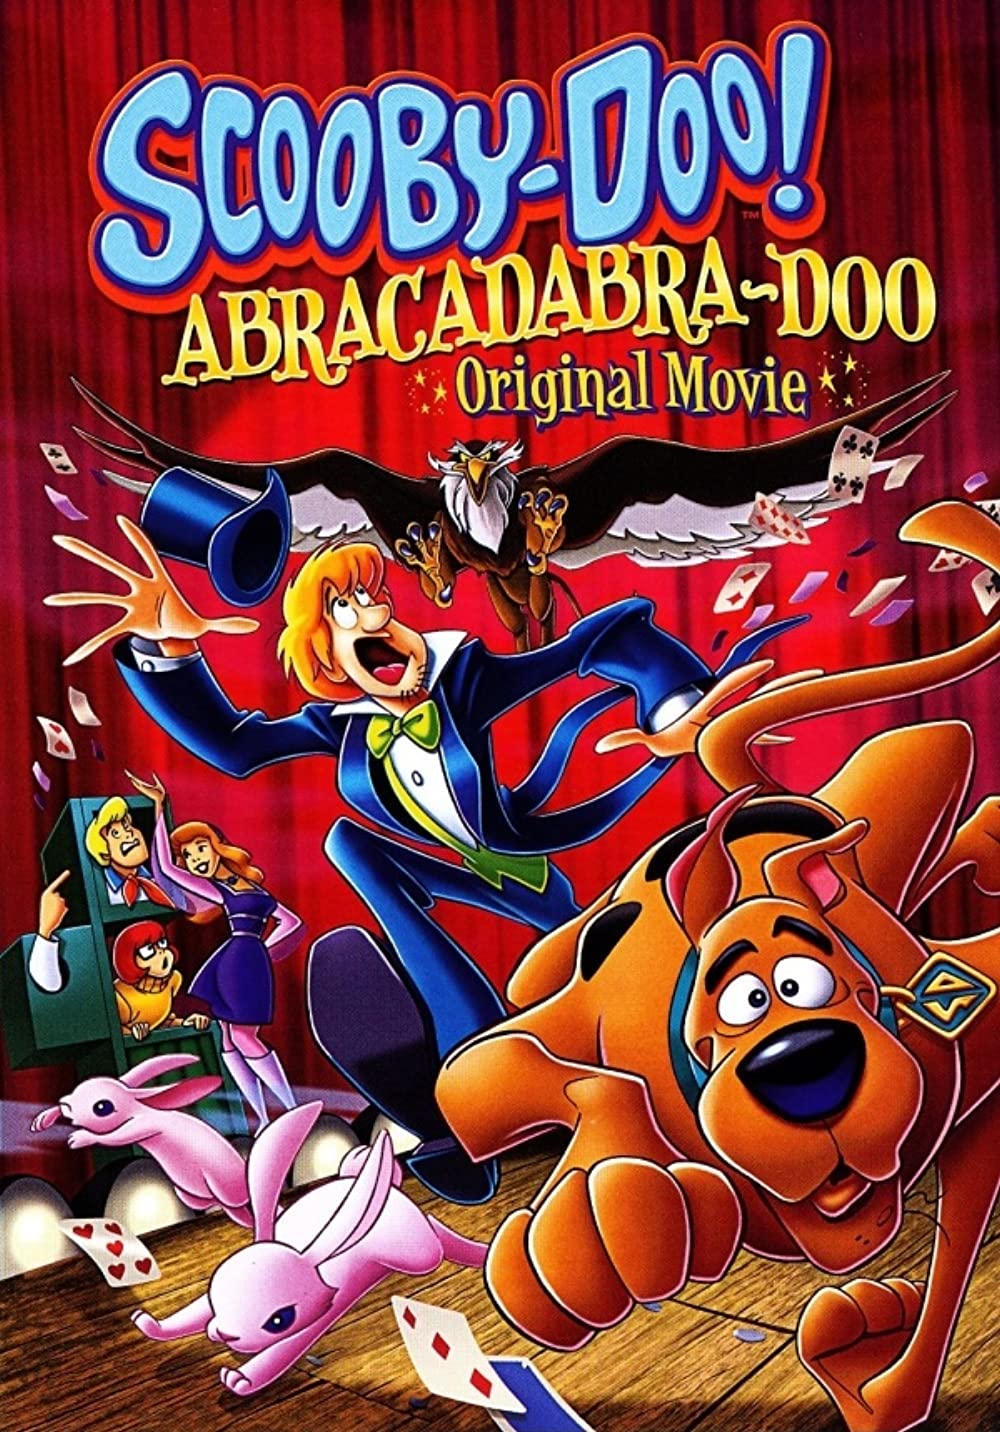 Download Scooby-Doo! Abracadabra-Doo Movie | Scooby-doo! Abracadabra-doo Dvd